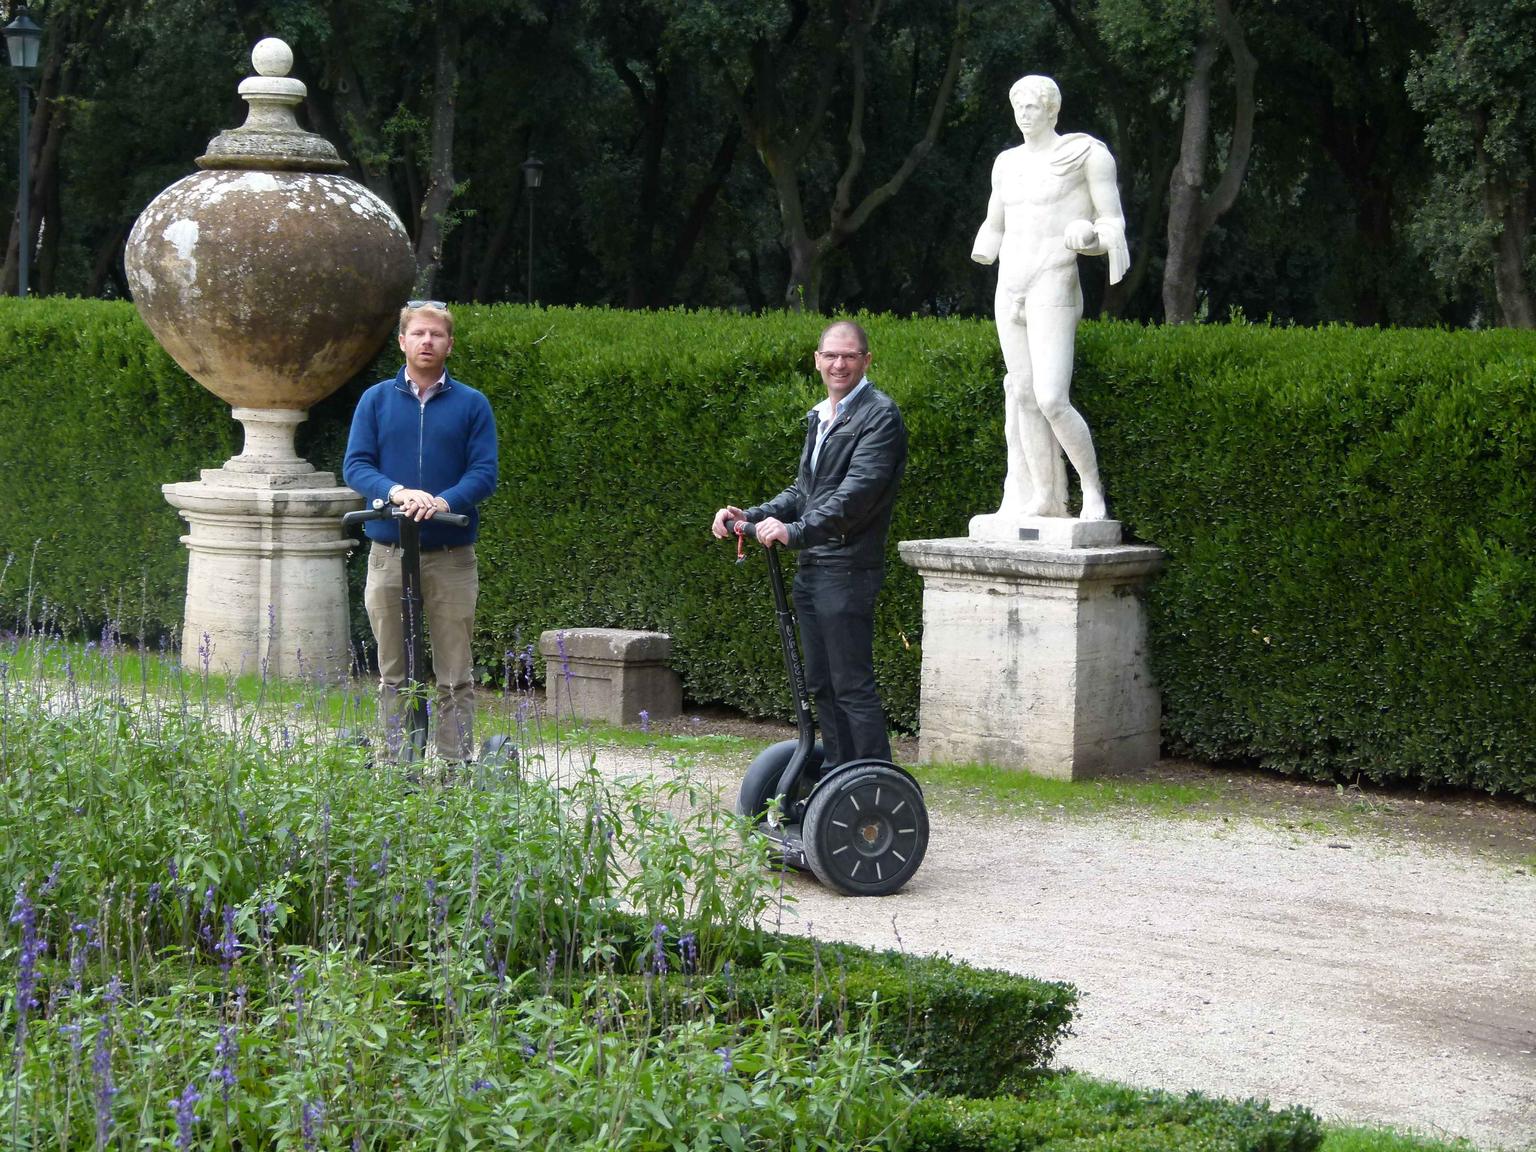 Jardin de la villa  - Garden in the villa Borghese